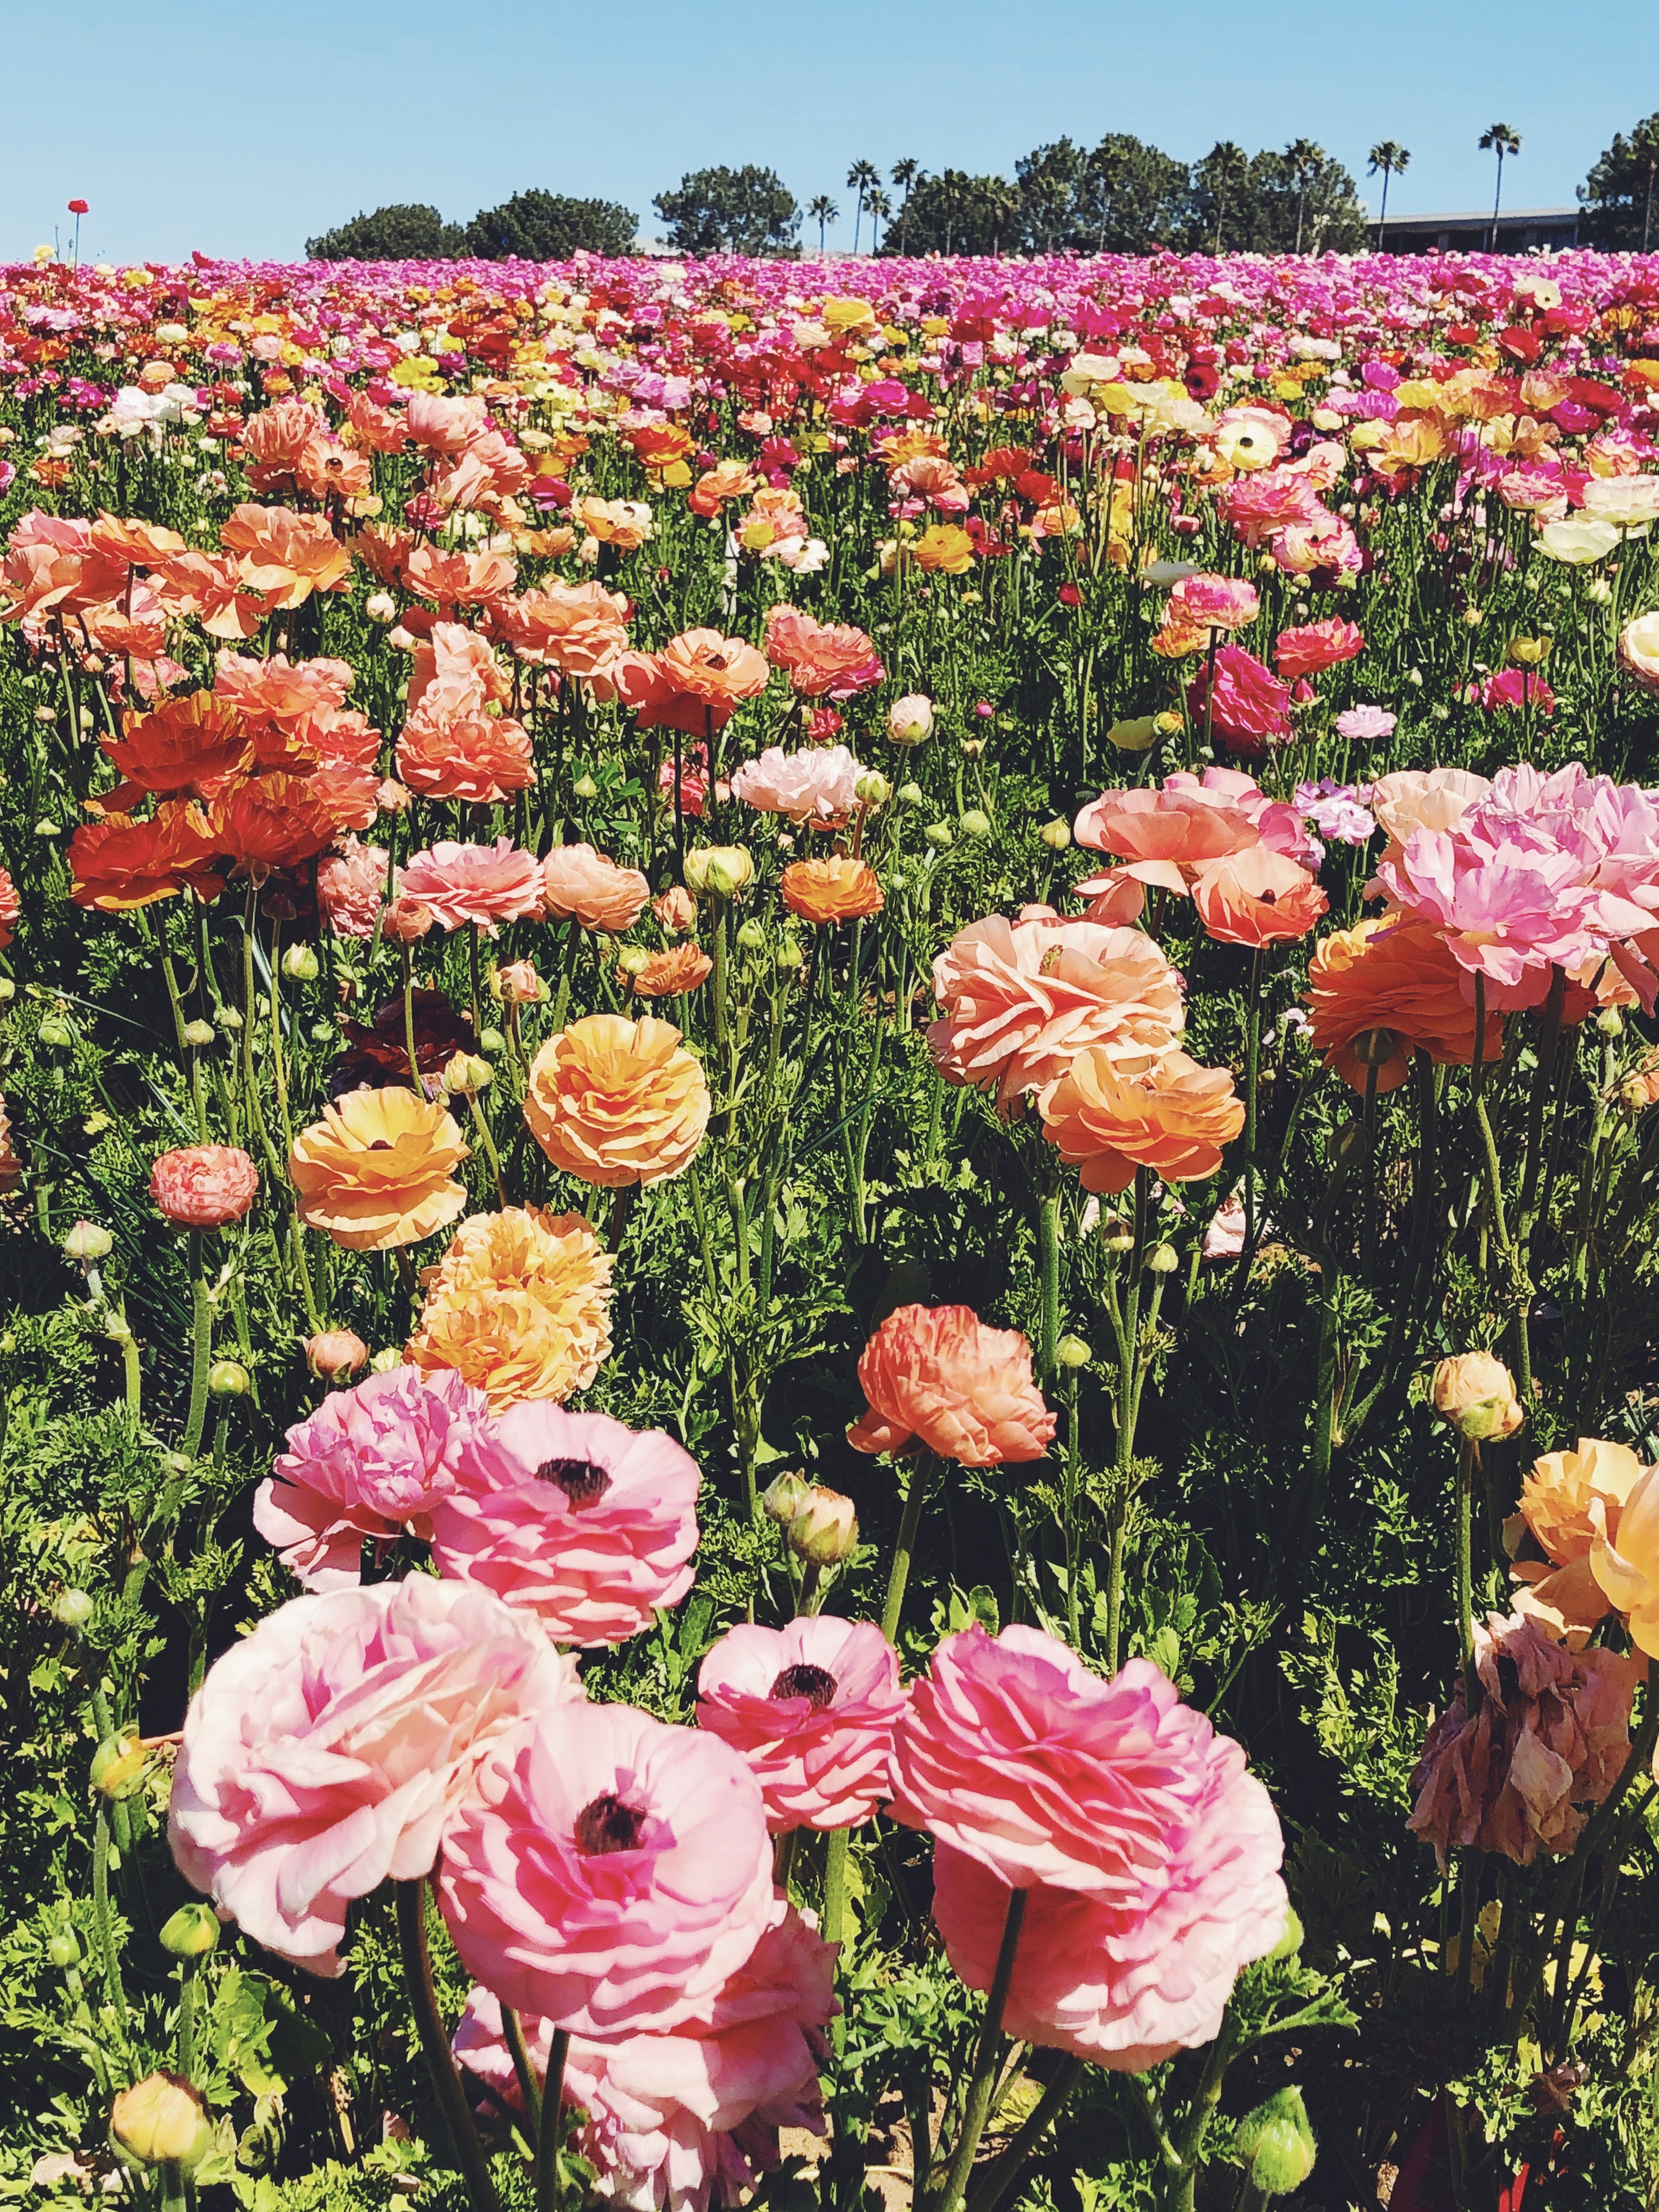 Flower fields in Carlsbad, California